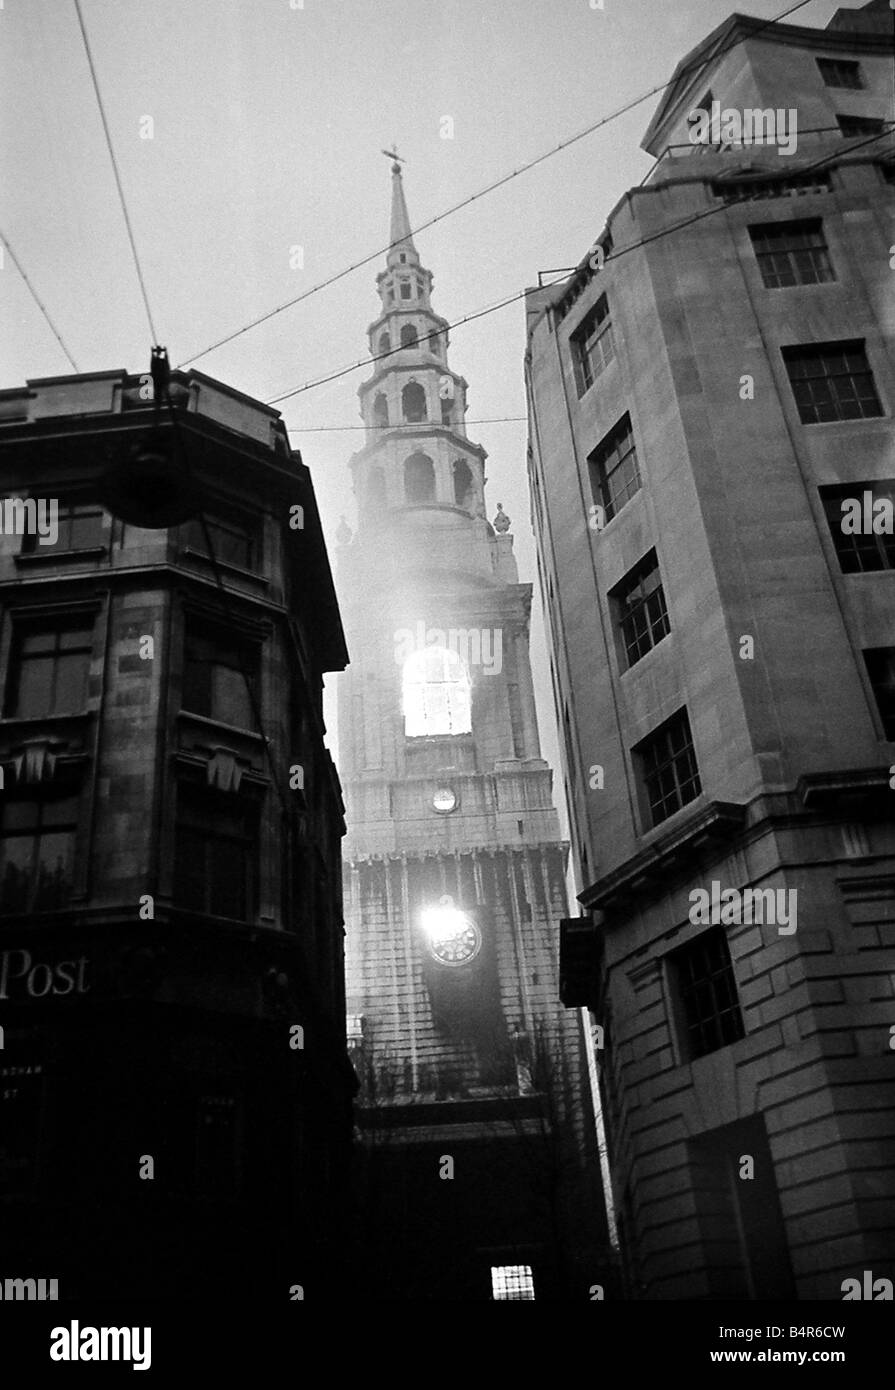 St Brides Fleet Street fire during the fire blitz of London Decemeber 1940 Stock Photo